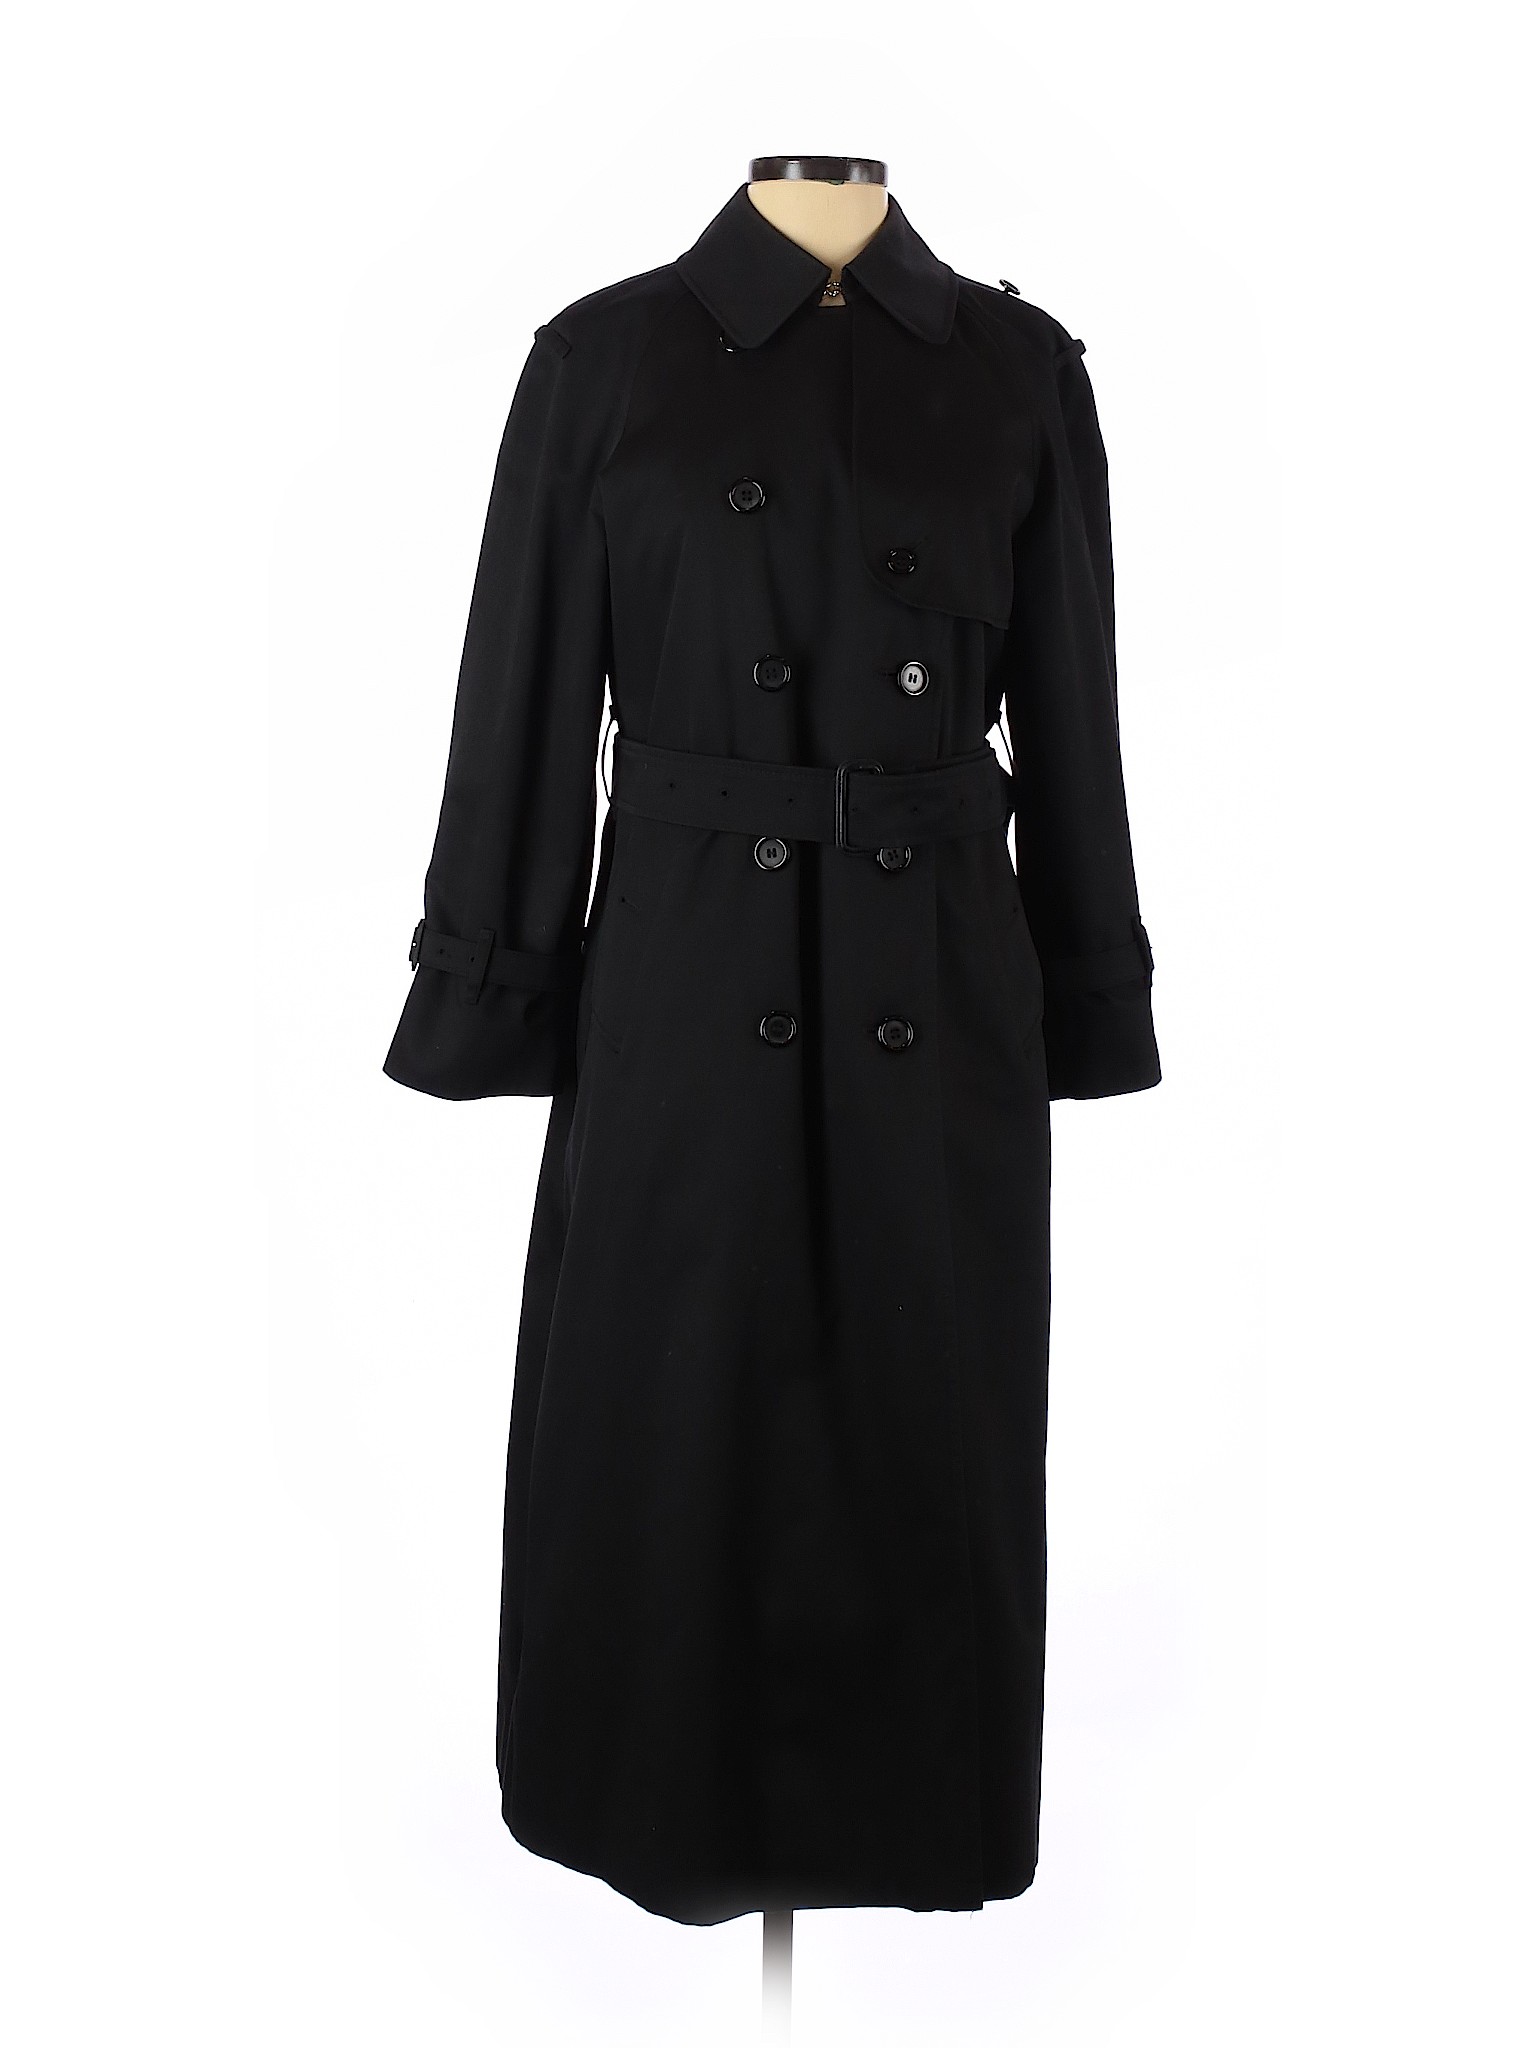 burberry women's black coat